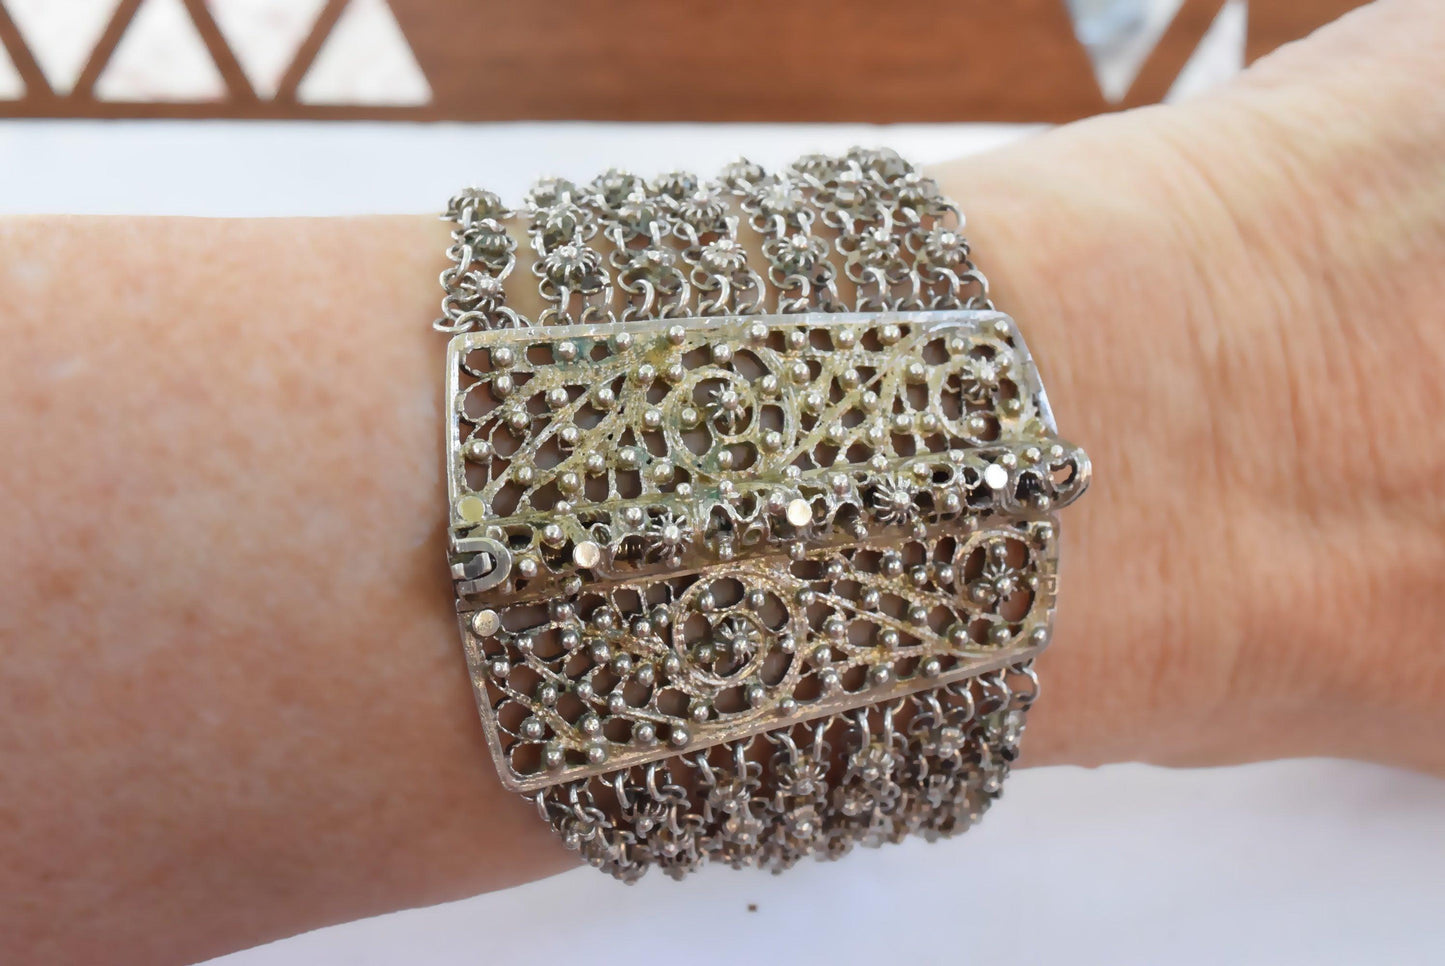 Egyptian chain bracelet